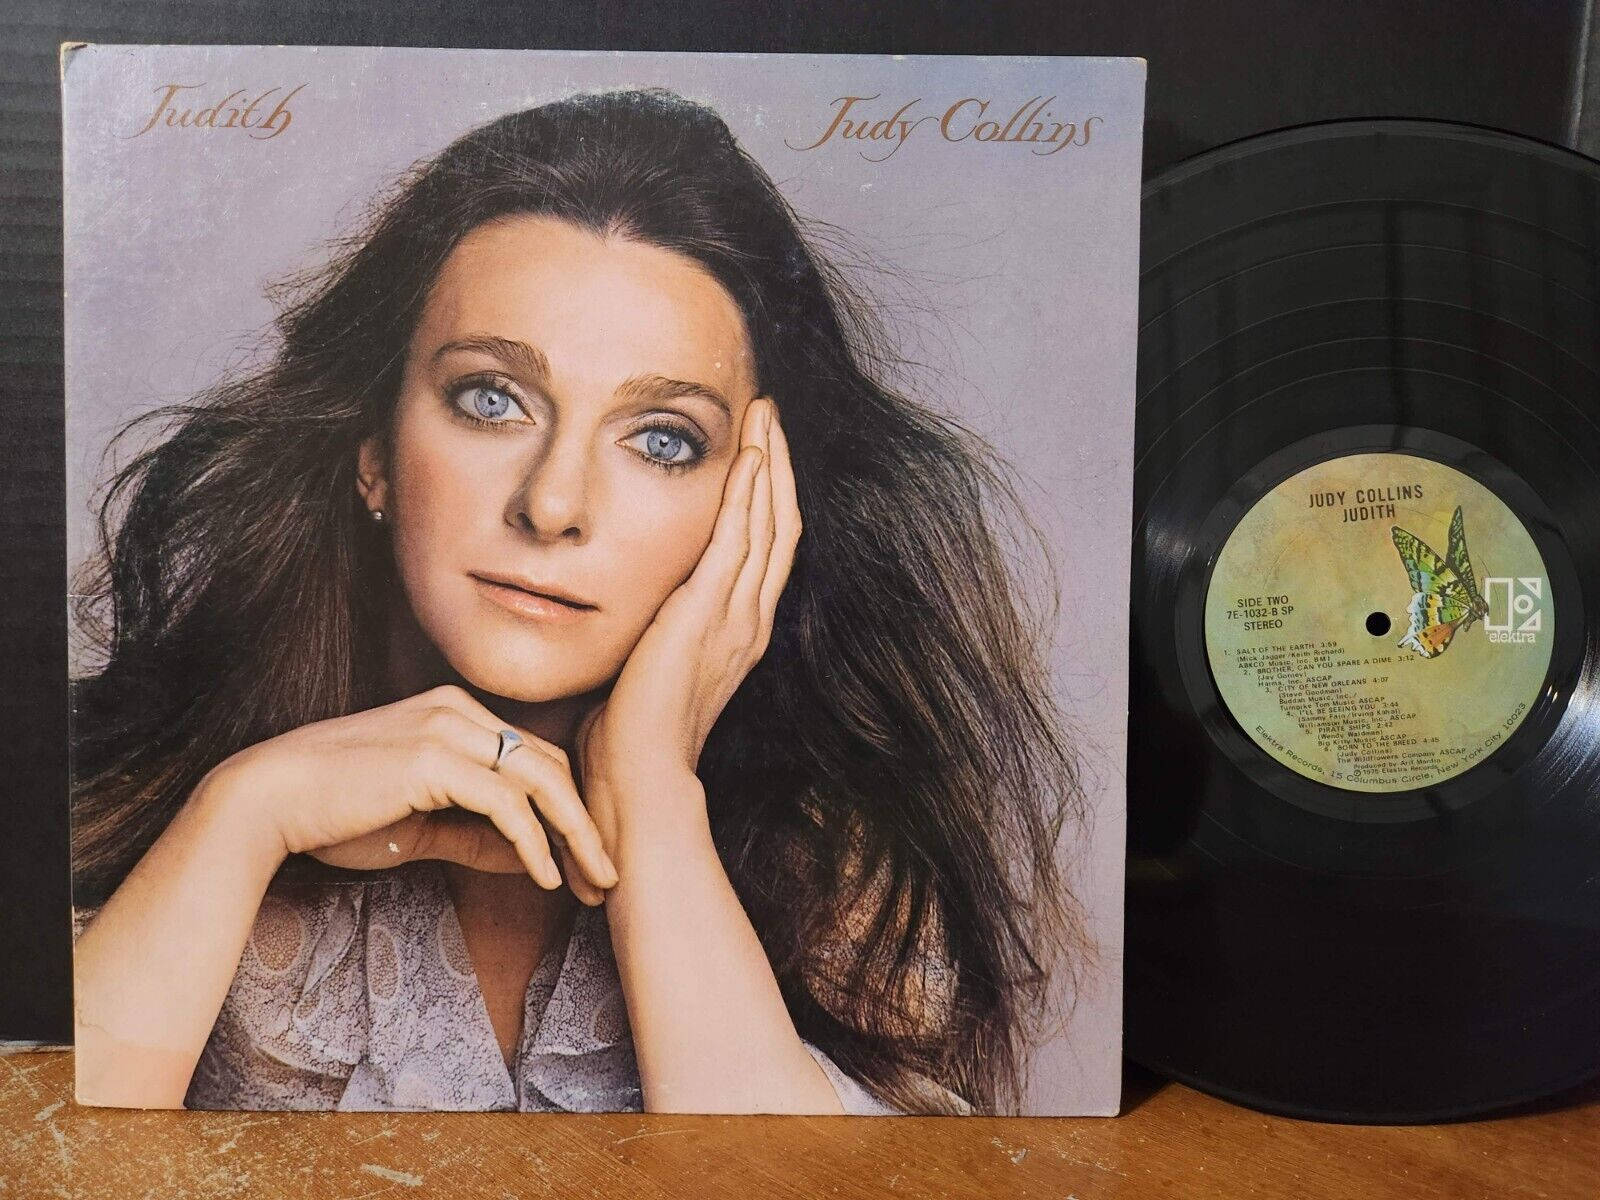 Cantanteestadounidense Judy Collins, Álbum Judith De 1975. Fondo de pantalla